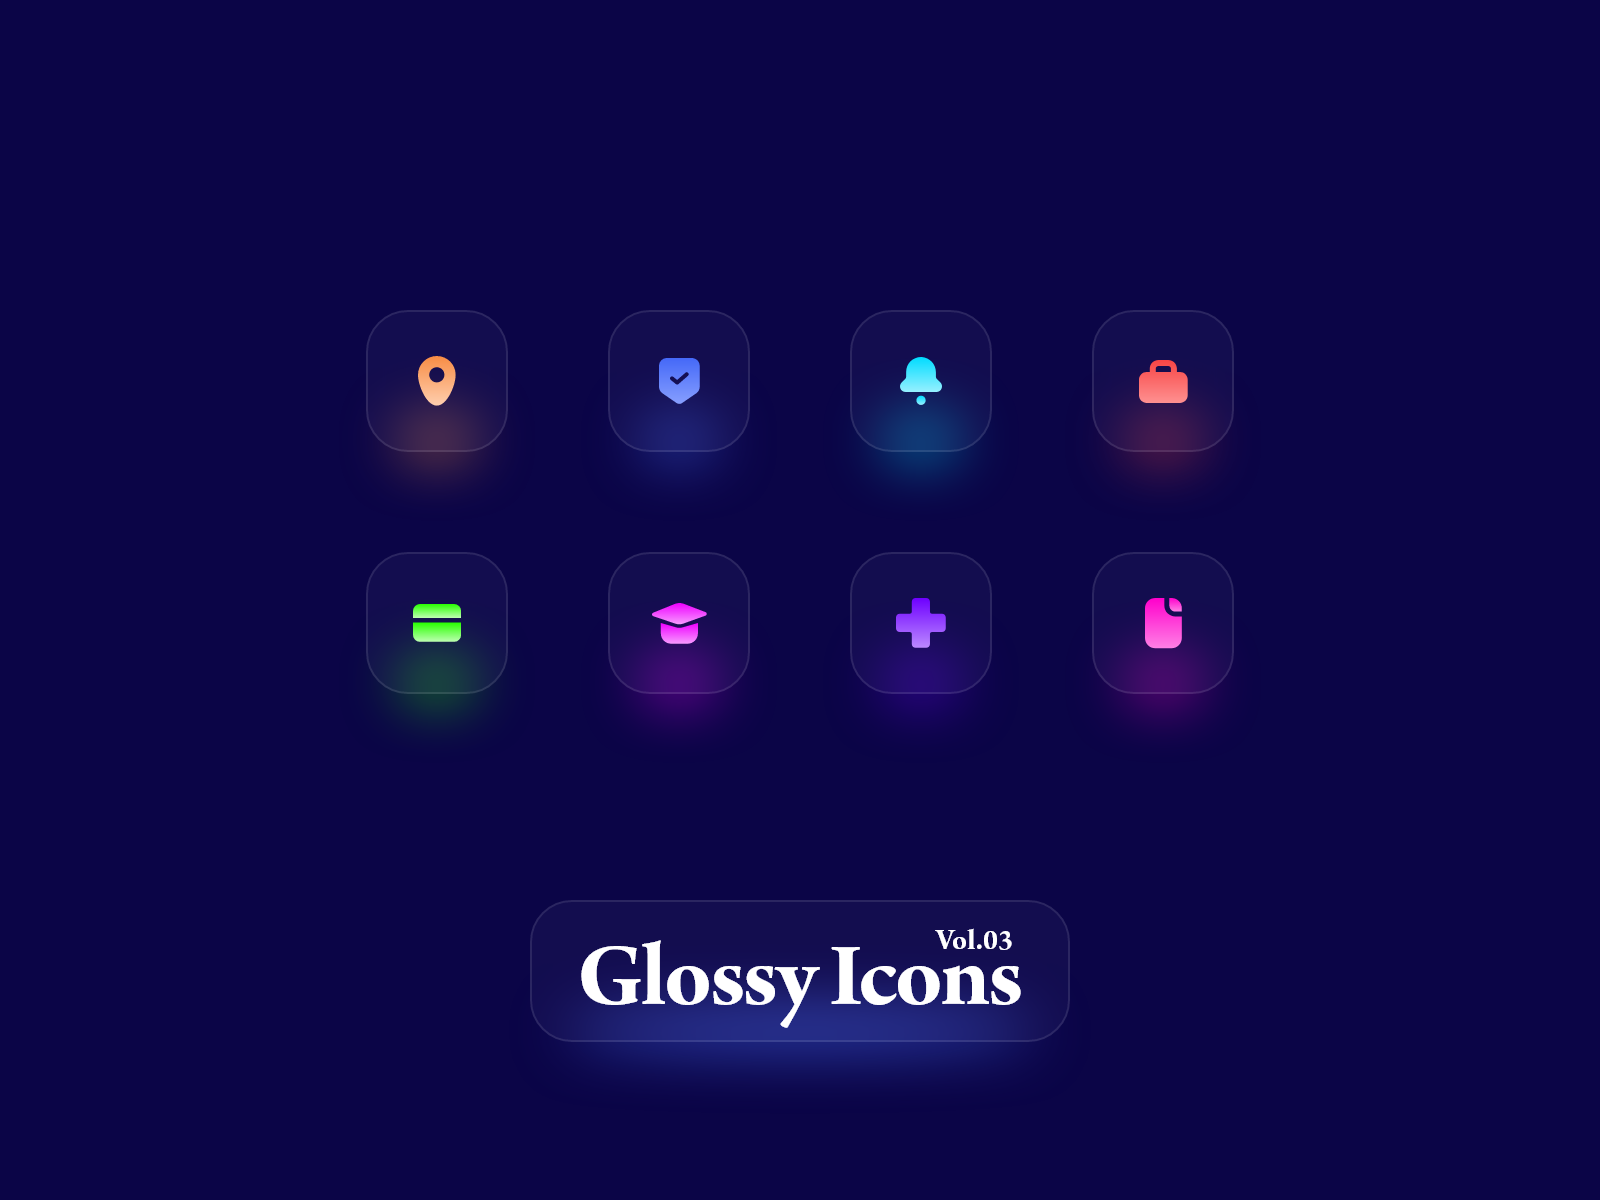 玻璃发光图标UI素材下载 – Glossy Icons XD素材